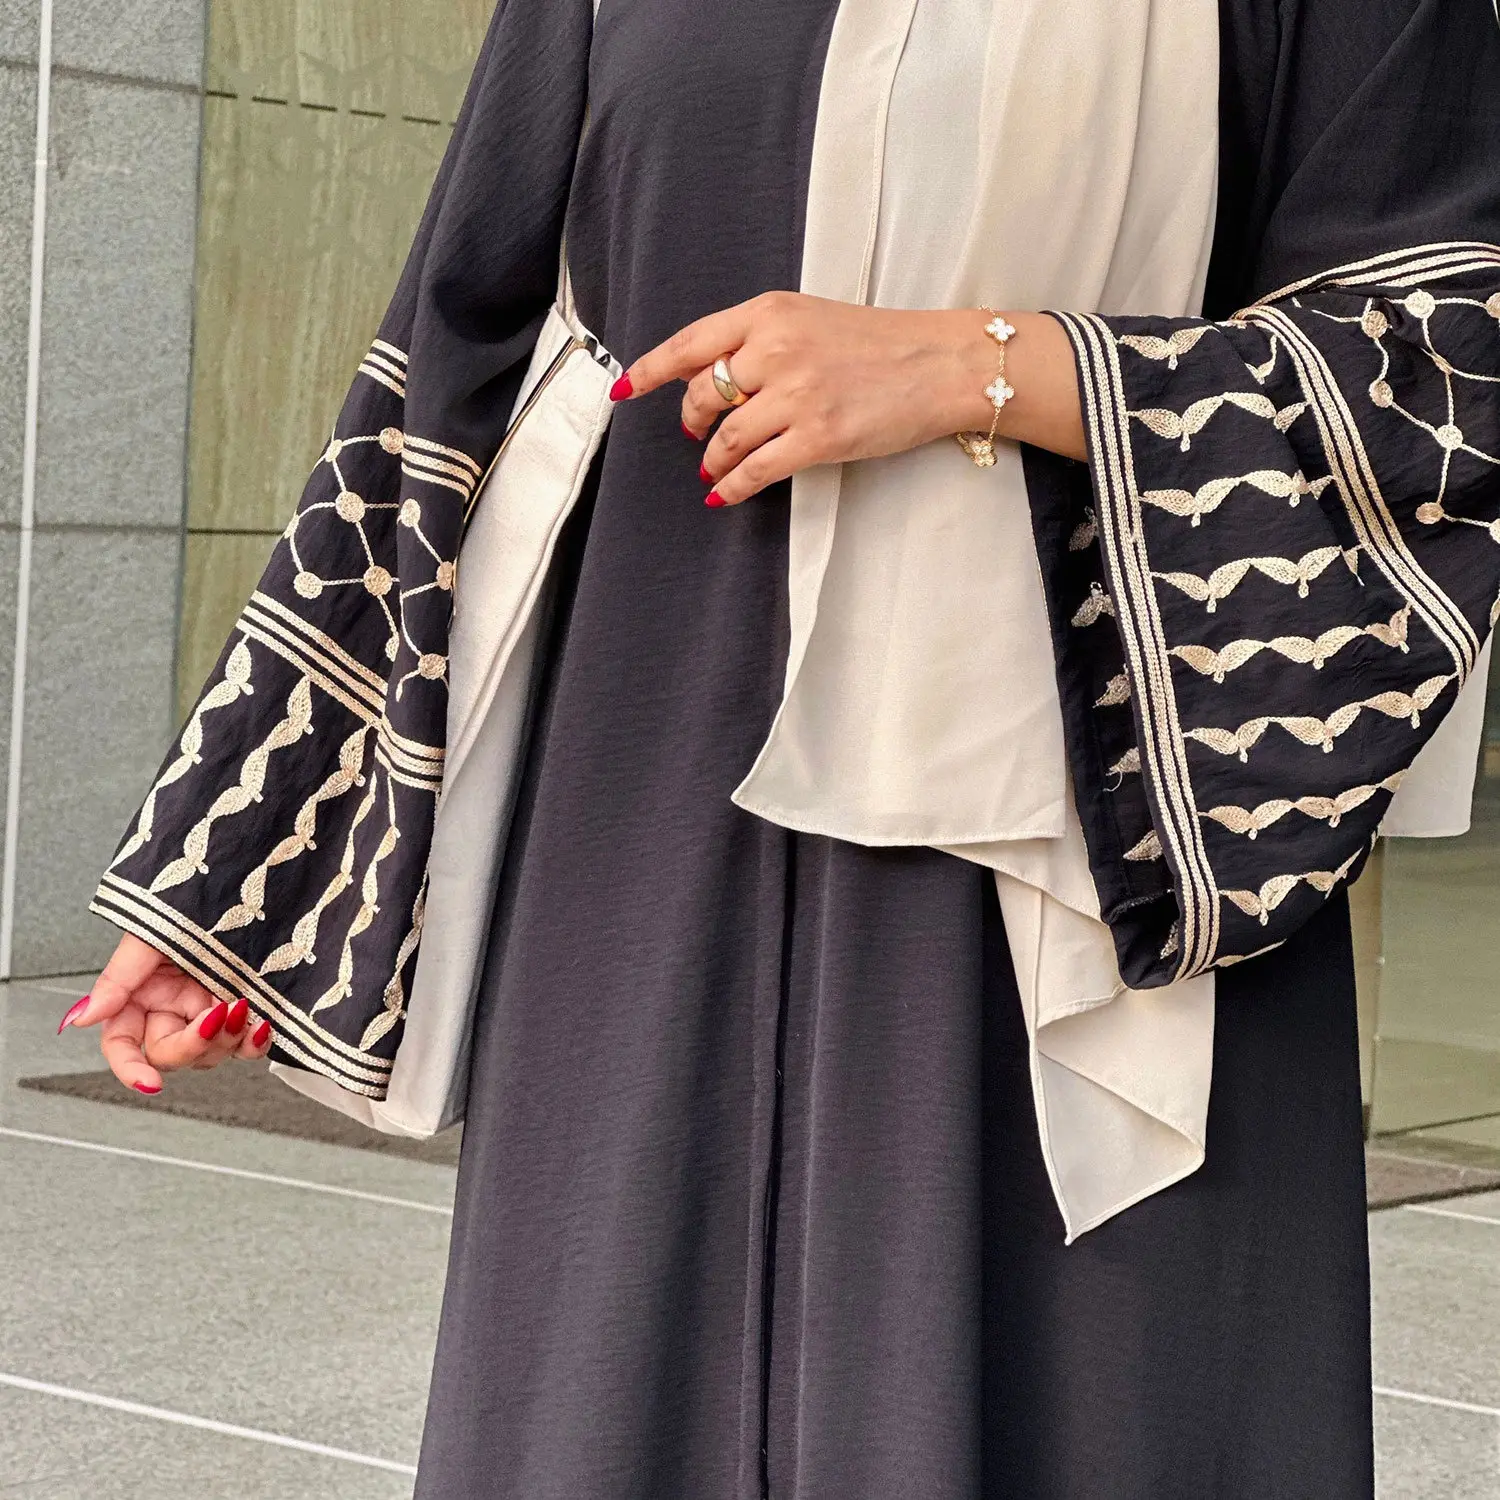 مجموعة الشرق الأوسط تركيا دبي أزياء راقية المطرزة شراشيب سترة روب للمرأة المسلمة فساتين إسلامية